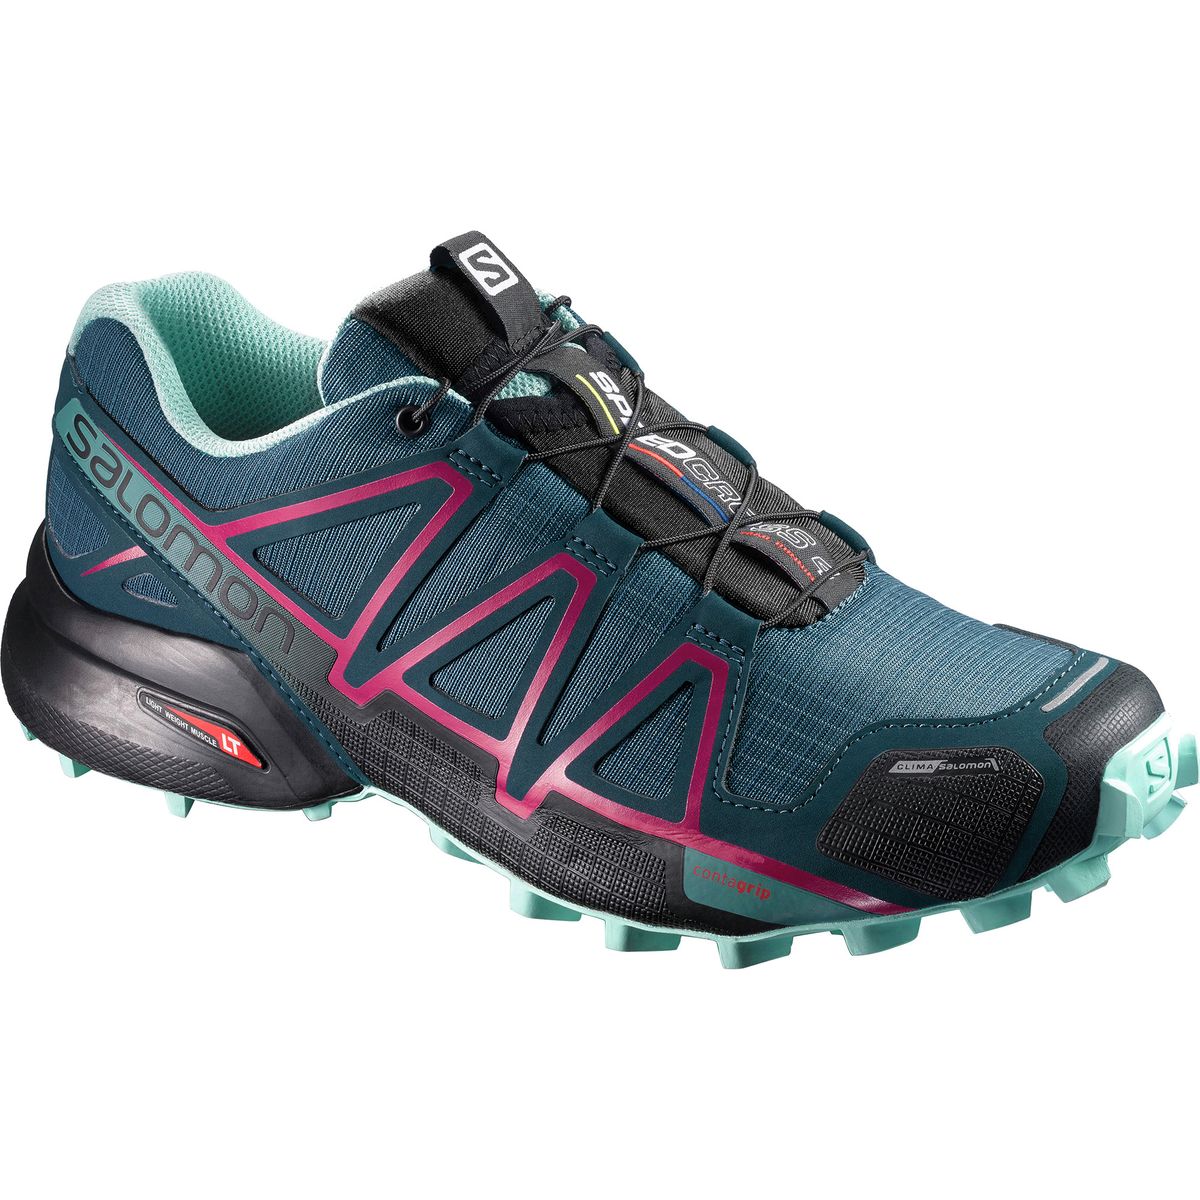 Salomon Speedcross 4 CS Trail Running Shoe - Women's - Footwear